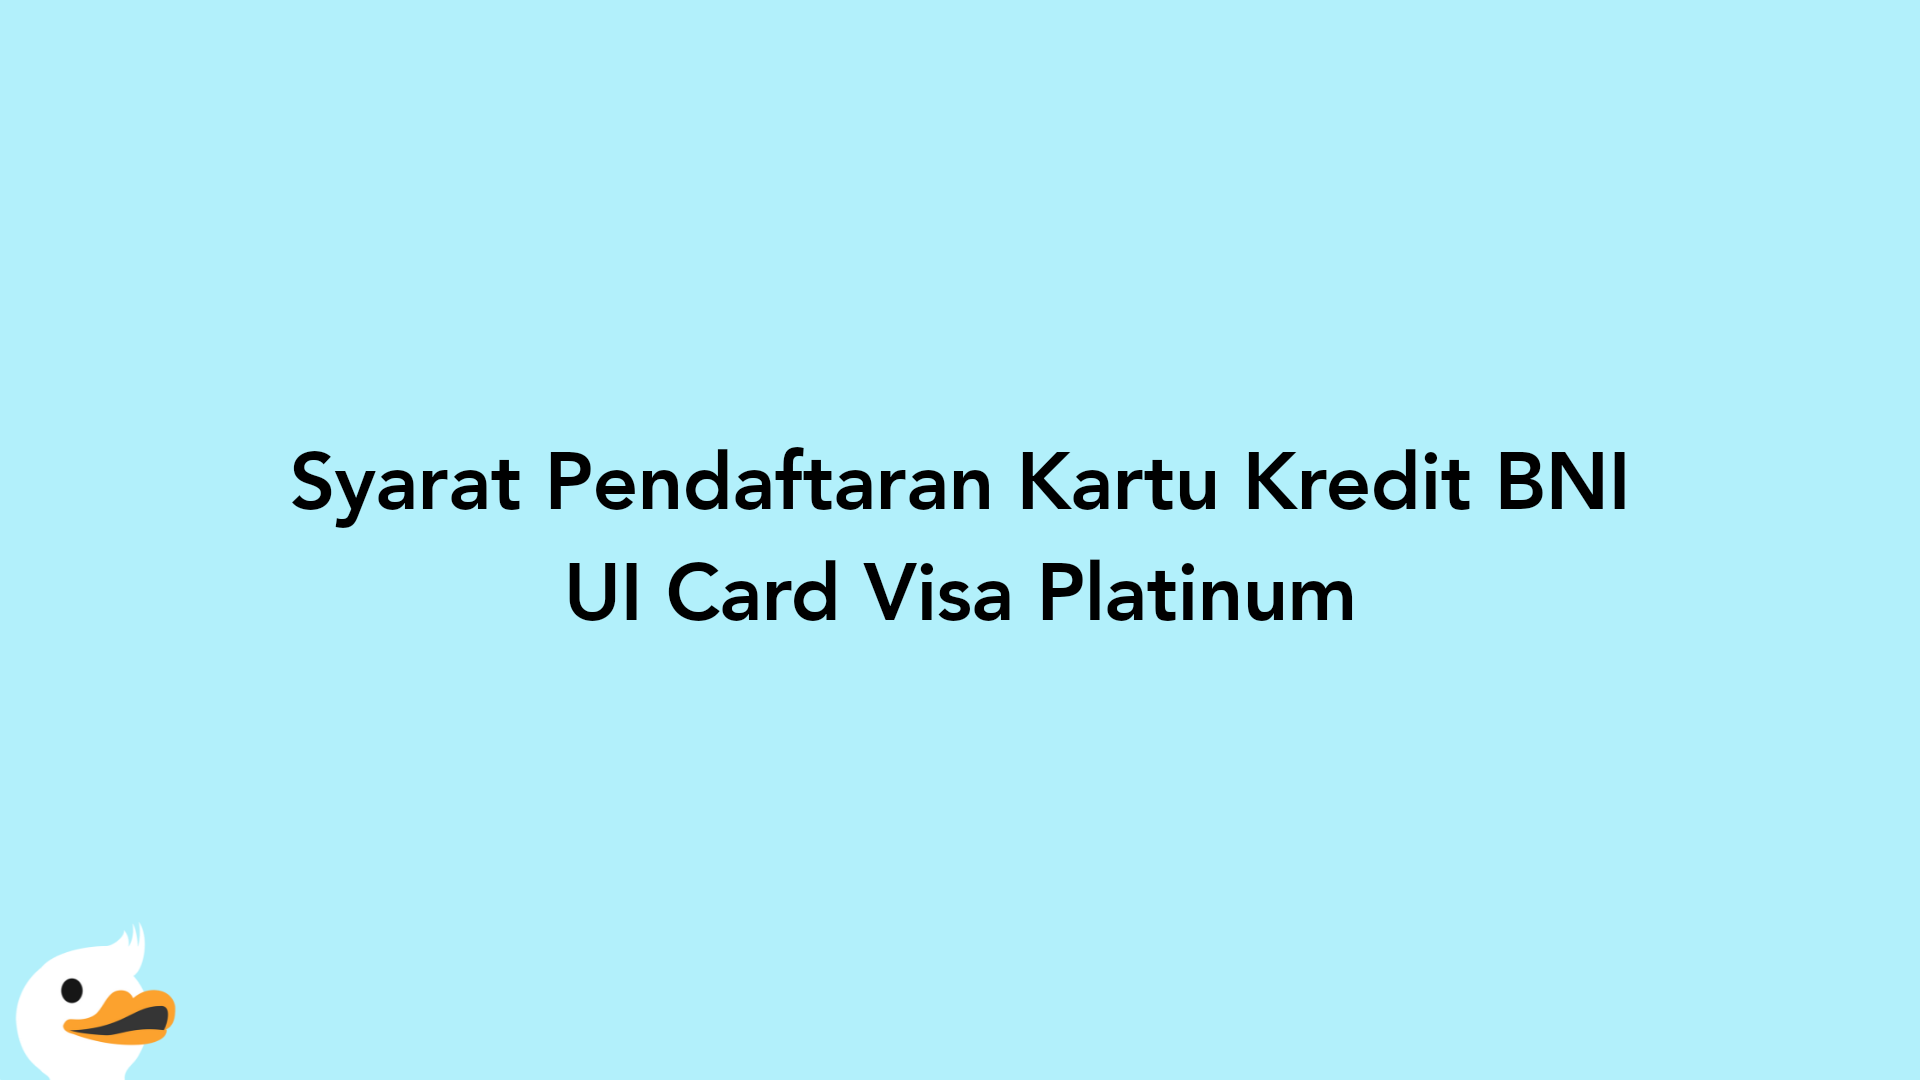 Syarat Pendaftaran Kartu Kredit BNI UI Card Visa Platinum